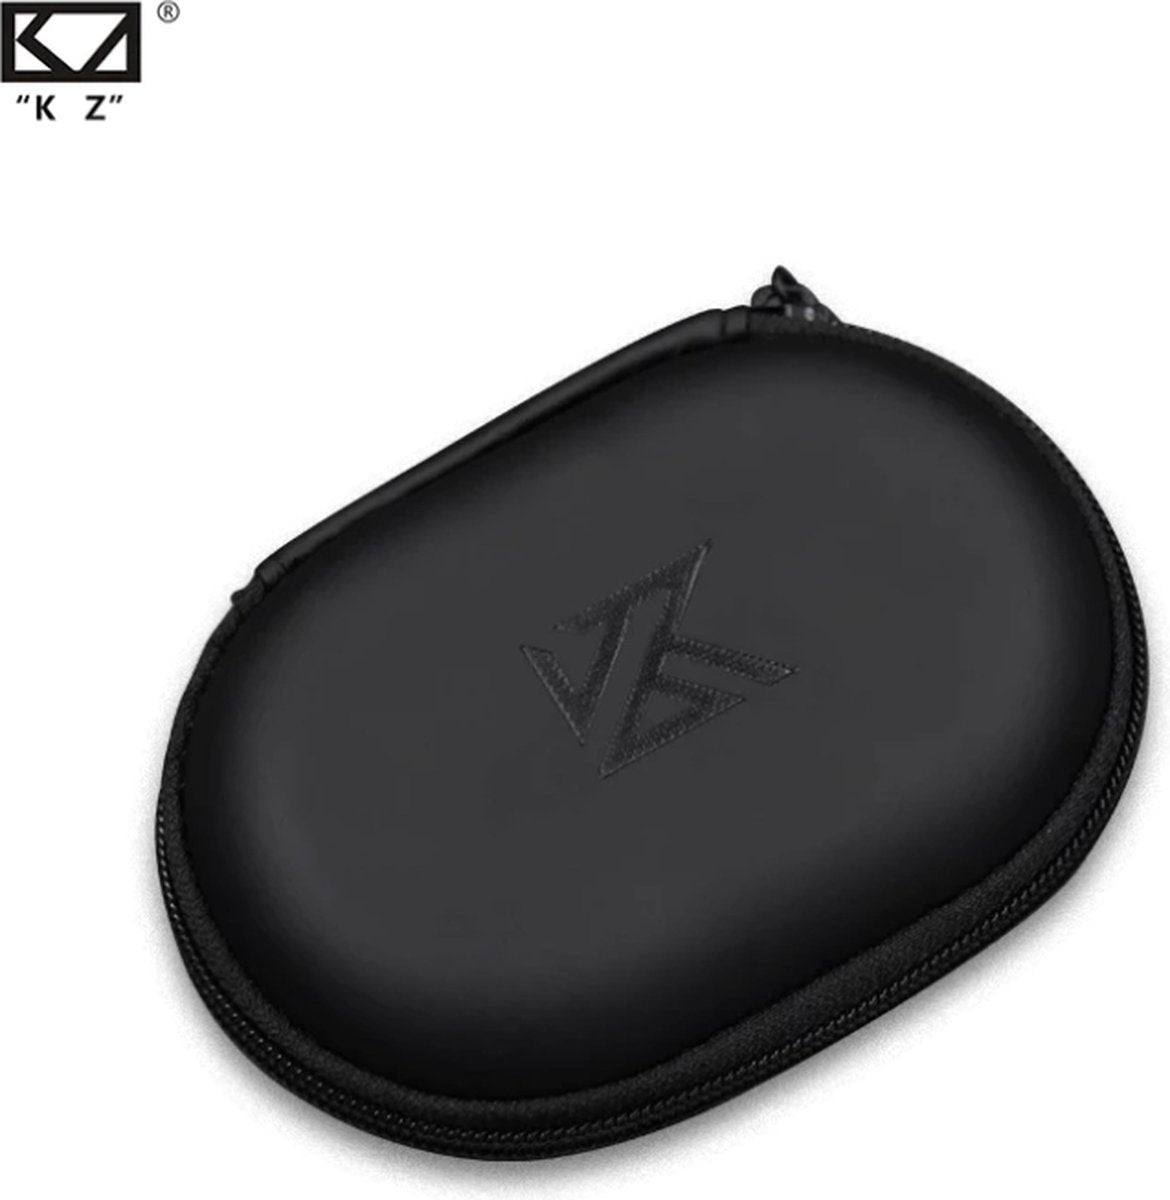 KZ - Étui pour écouteurs intra-auriculaires - Noir